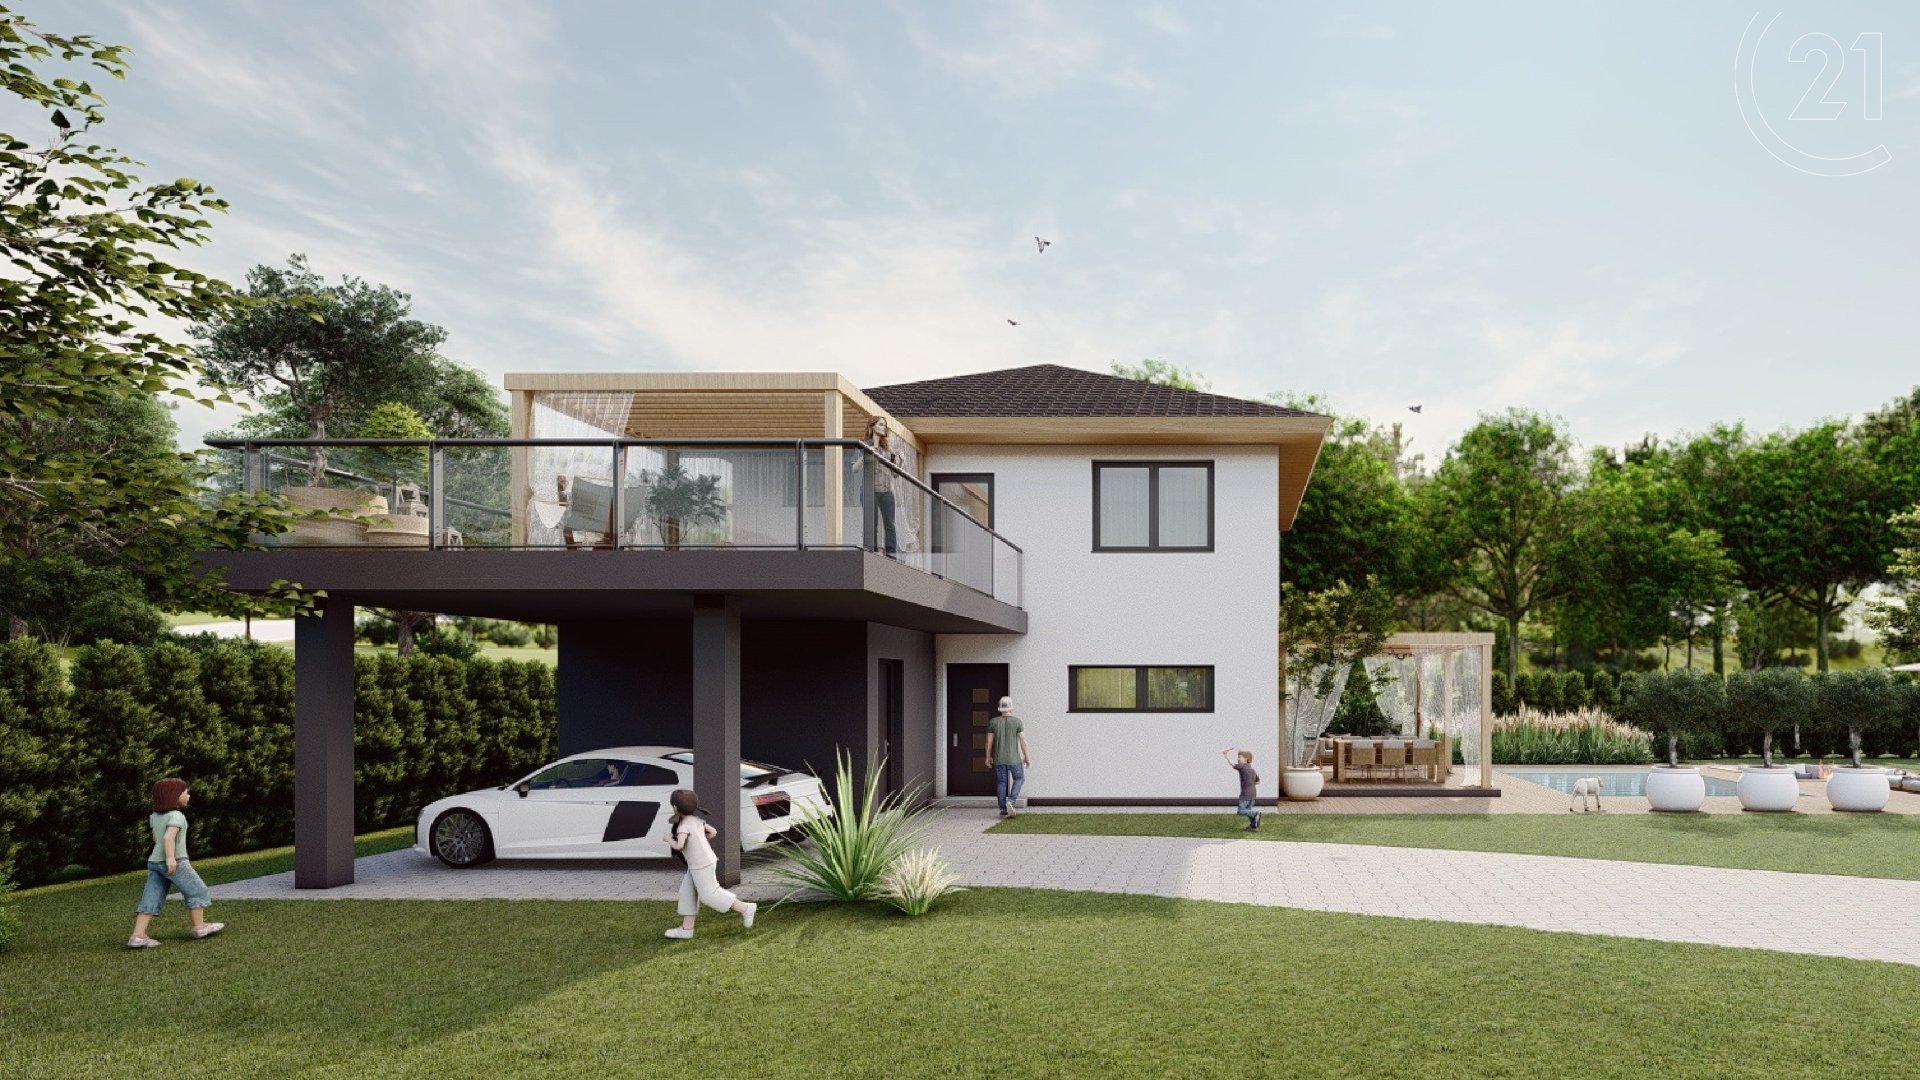 Novostavba rodinného domu, 4+1 s balkonem, terasou a stáním pro auto, Milíkov